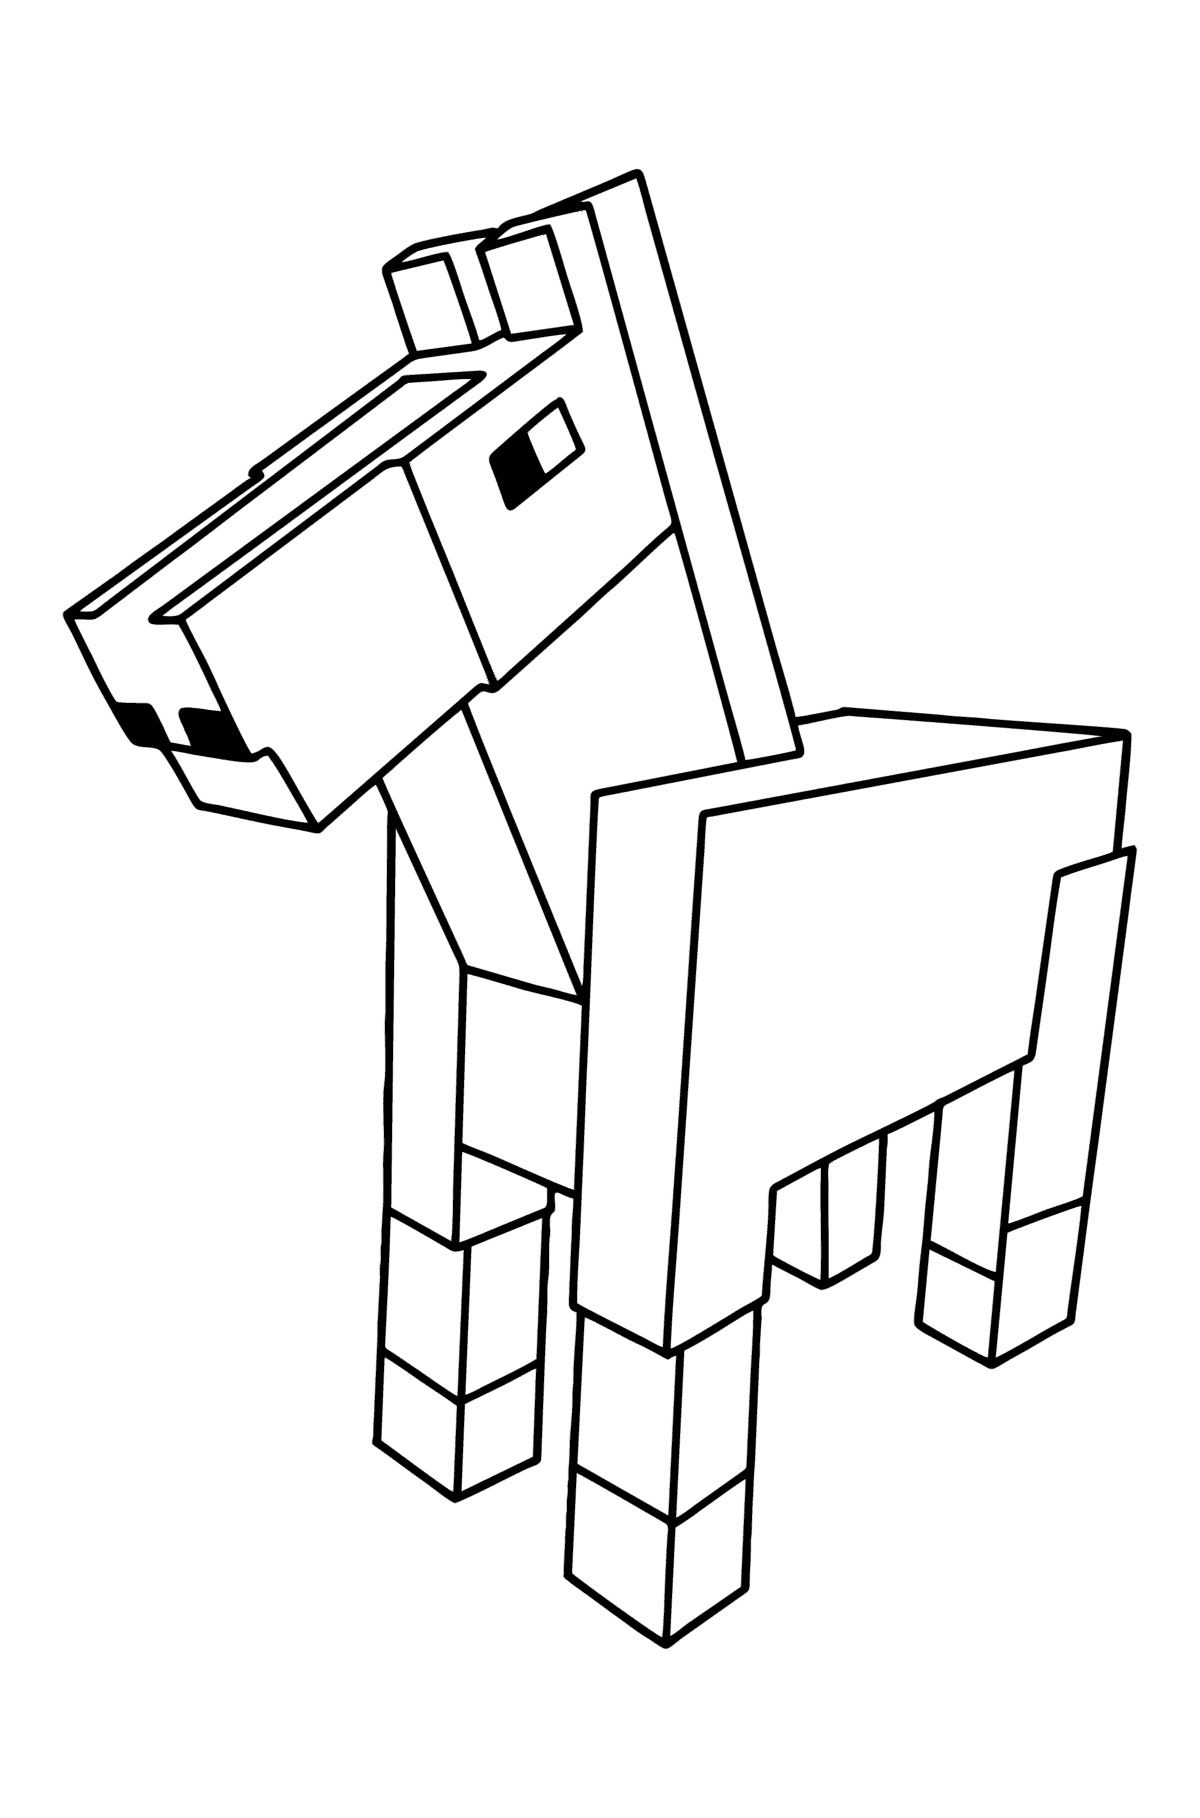 Boyama sayfası Minecraft Horse - Boyamalar çocuklar için